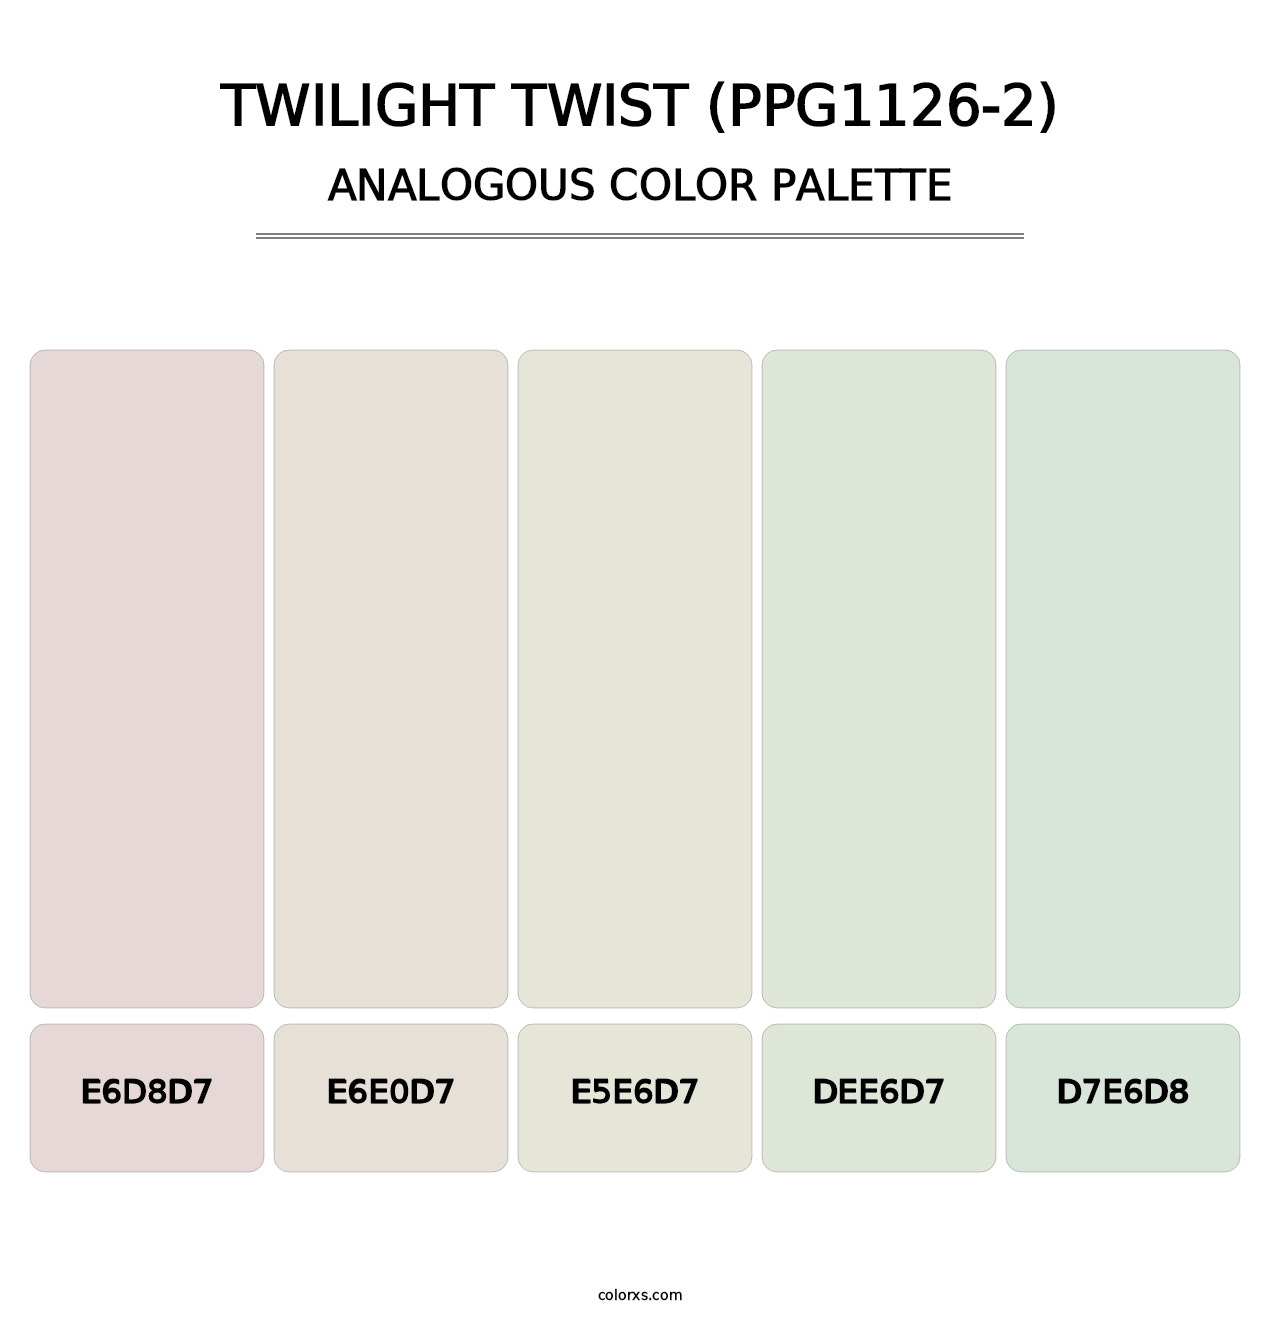 Twilight Twist (PPG1126-2) - Analogous Color Palette